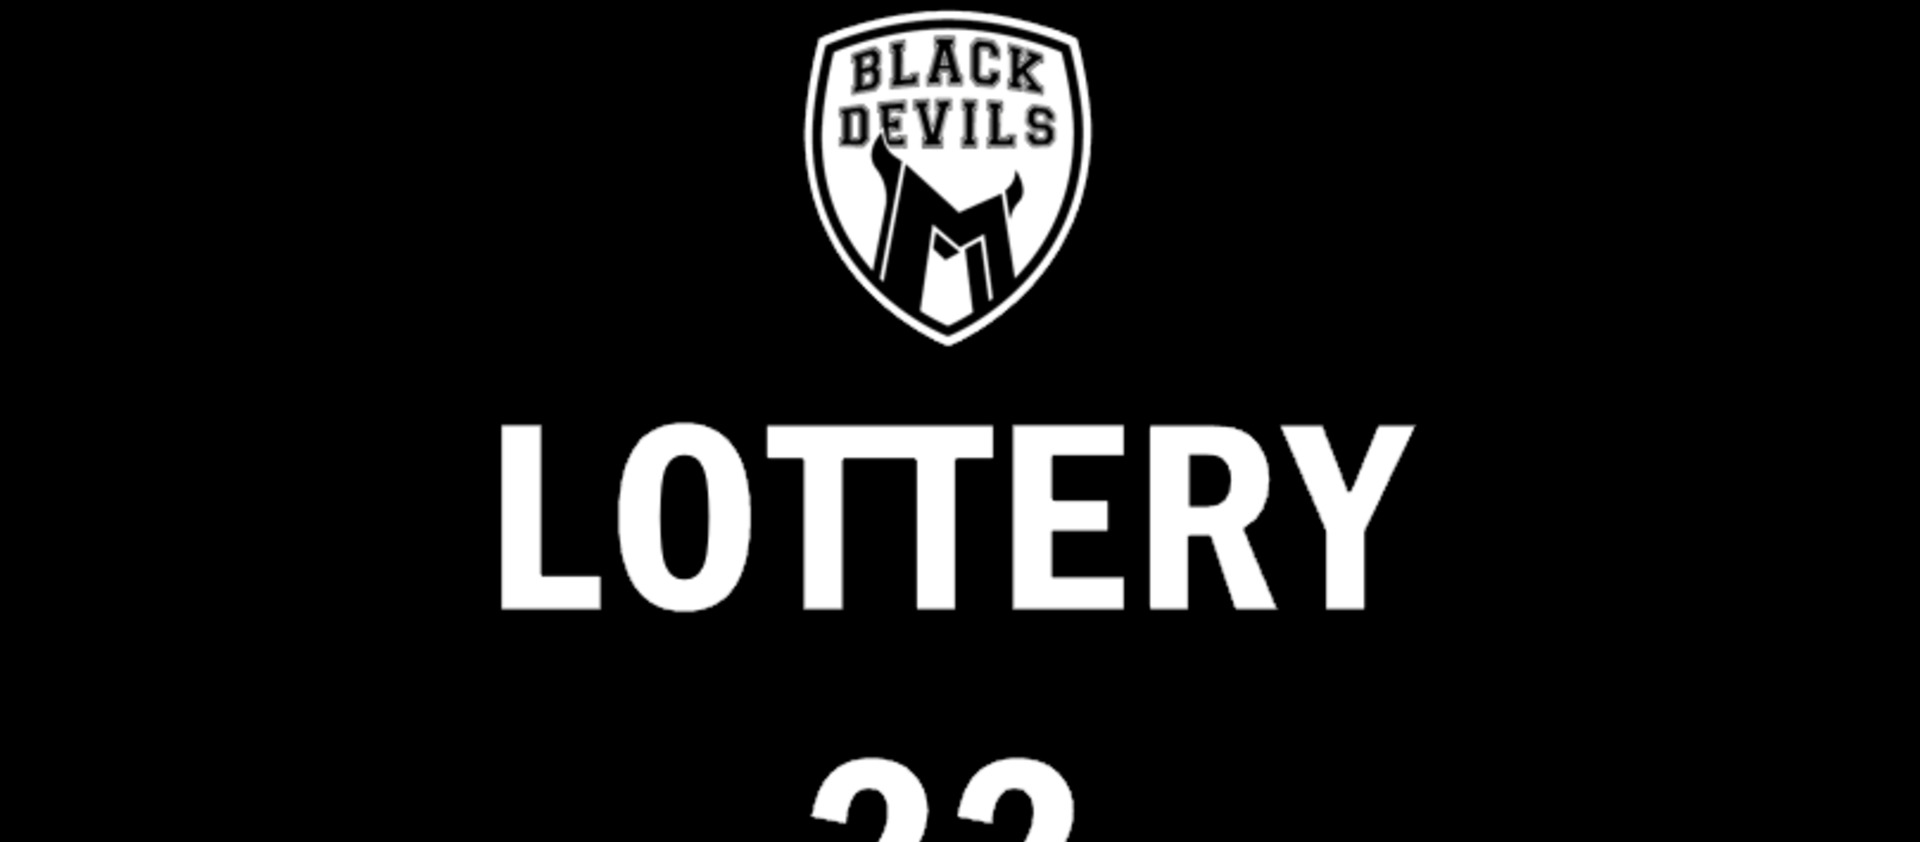 Estrazione Lotteria Black Devils 22